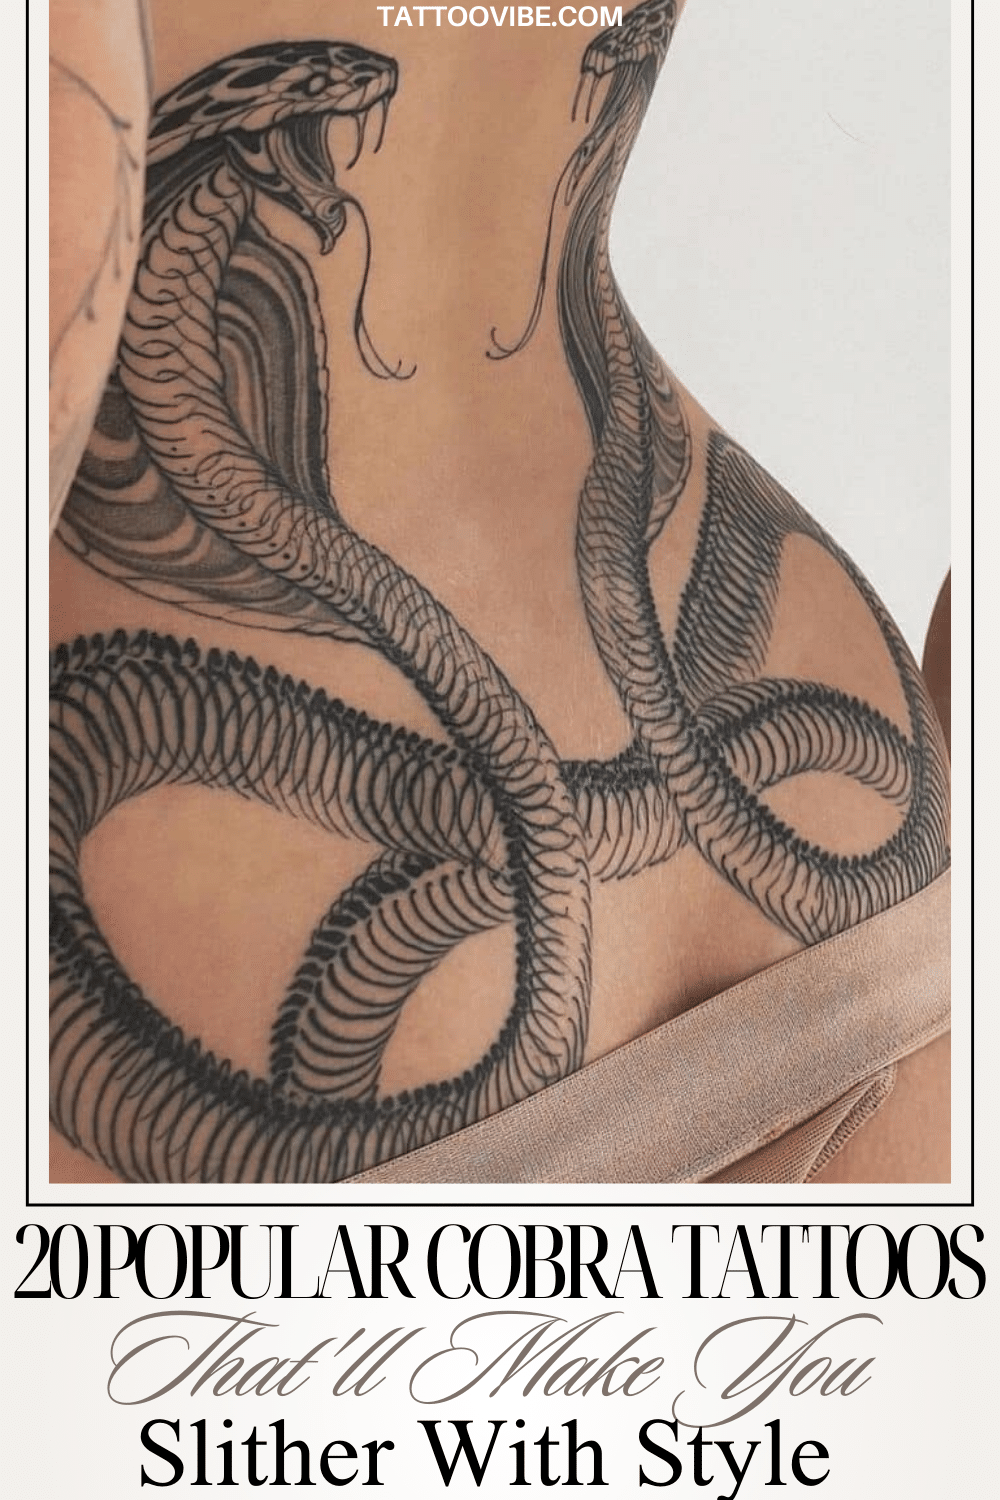 Beliebte Cobra-Tattoos, die Sie mit Stil schlittern lassen